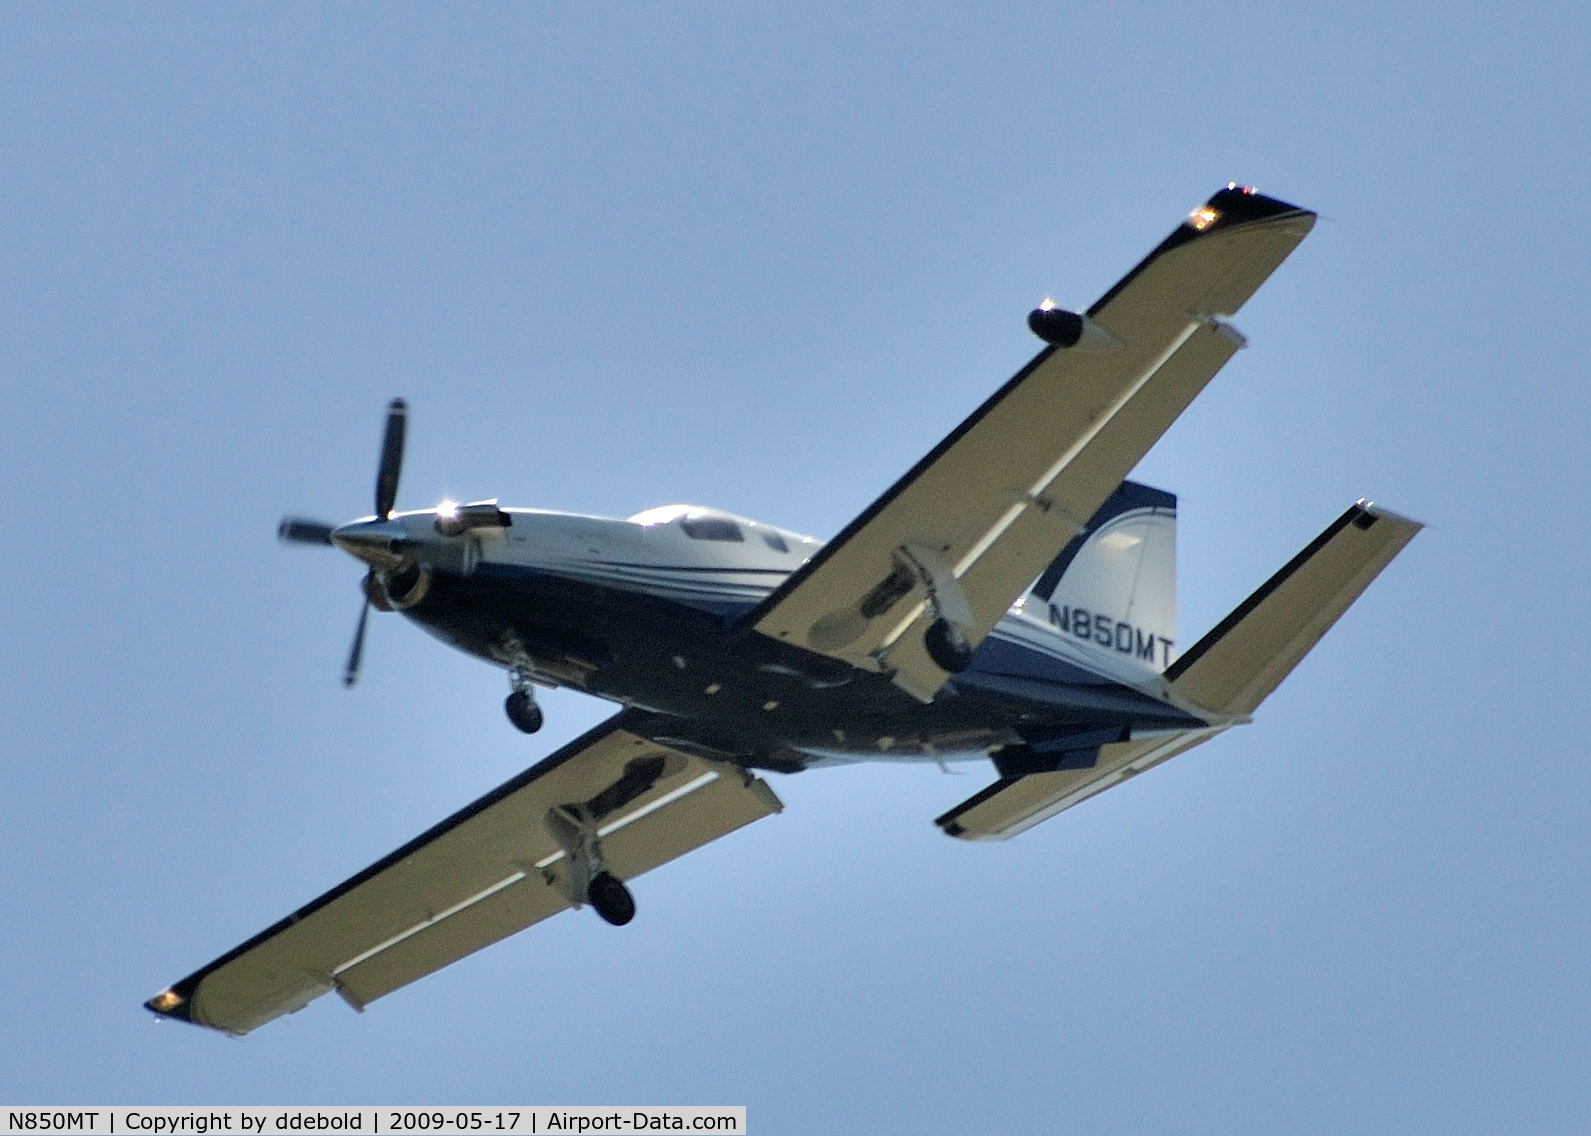 N850MT, Socata TBM-700 C/N 489, N850MT flying overhead at Shoreline Lake in Mountain View, CA